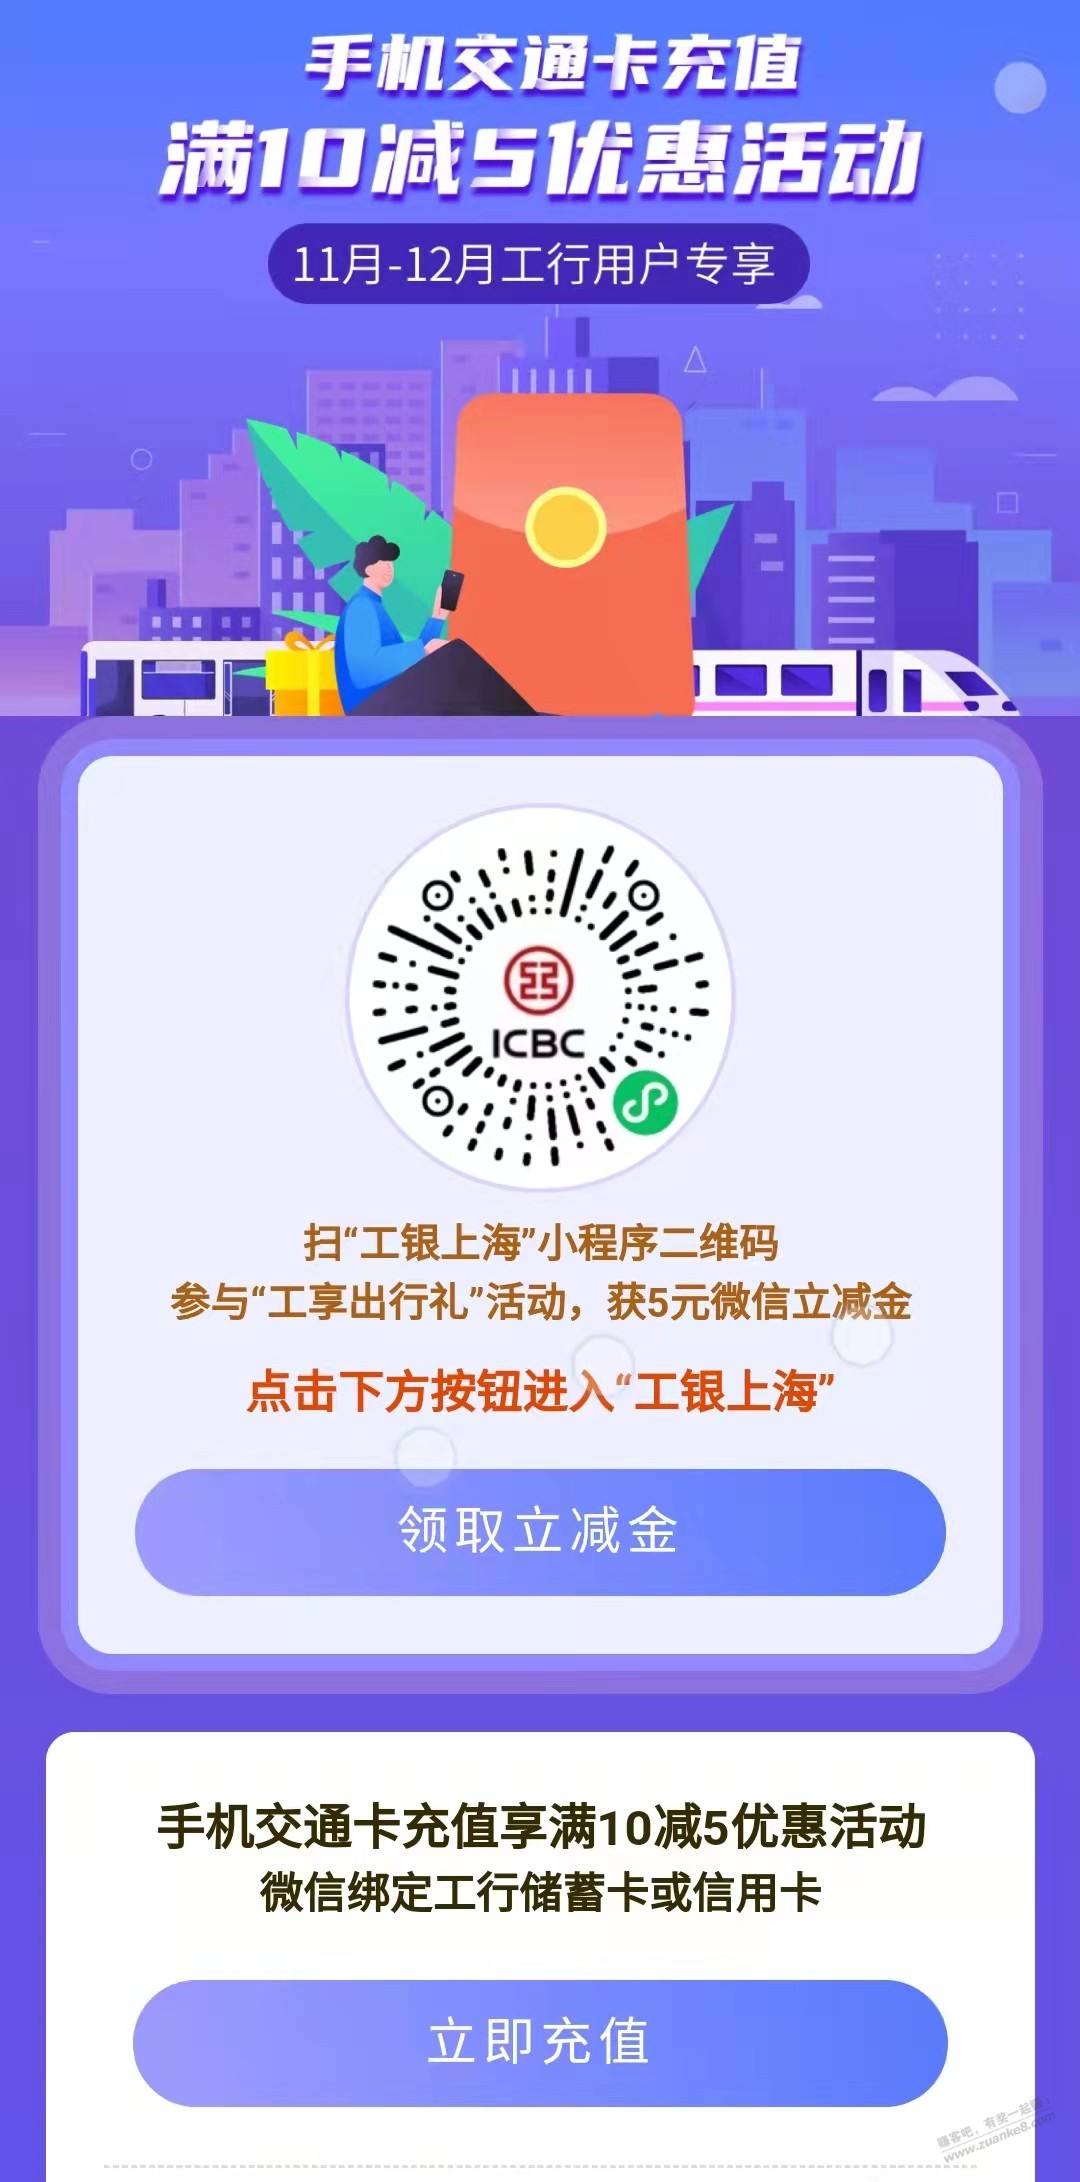 上海手机号+工行+交通卡充值10-5-惠小助(52huixz.com)